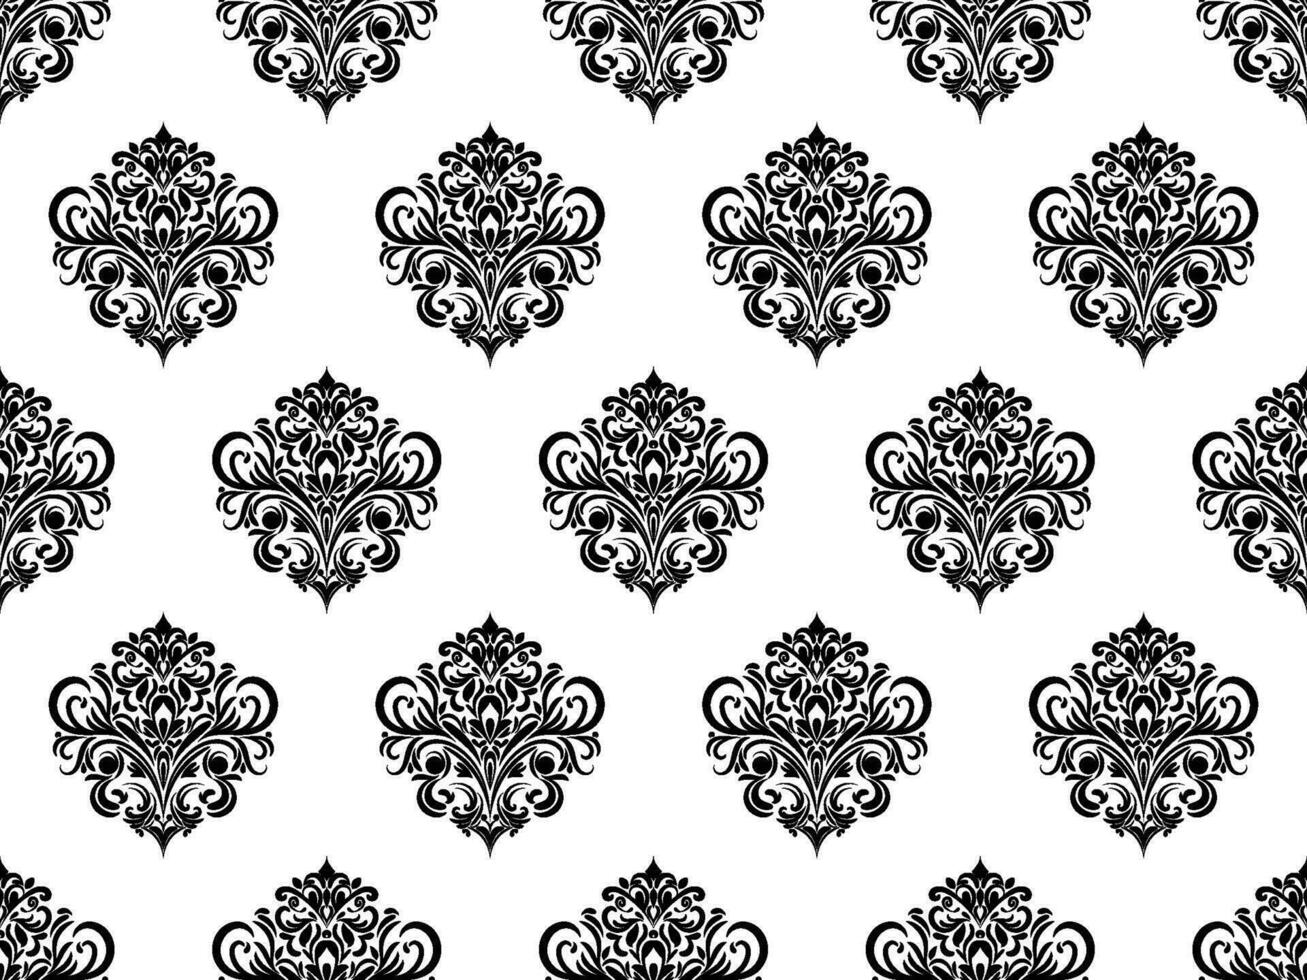 damast naadloos patroon. zwart bloemen luxe Koninklijk behang. bloemen achtergrond. vector